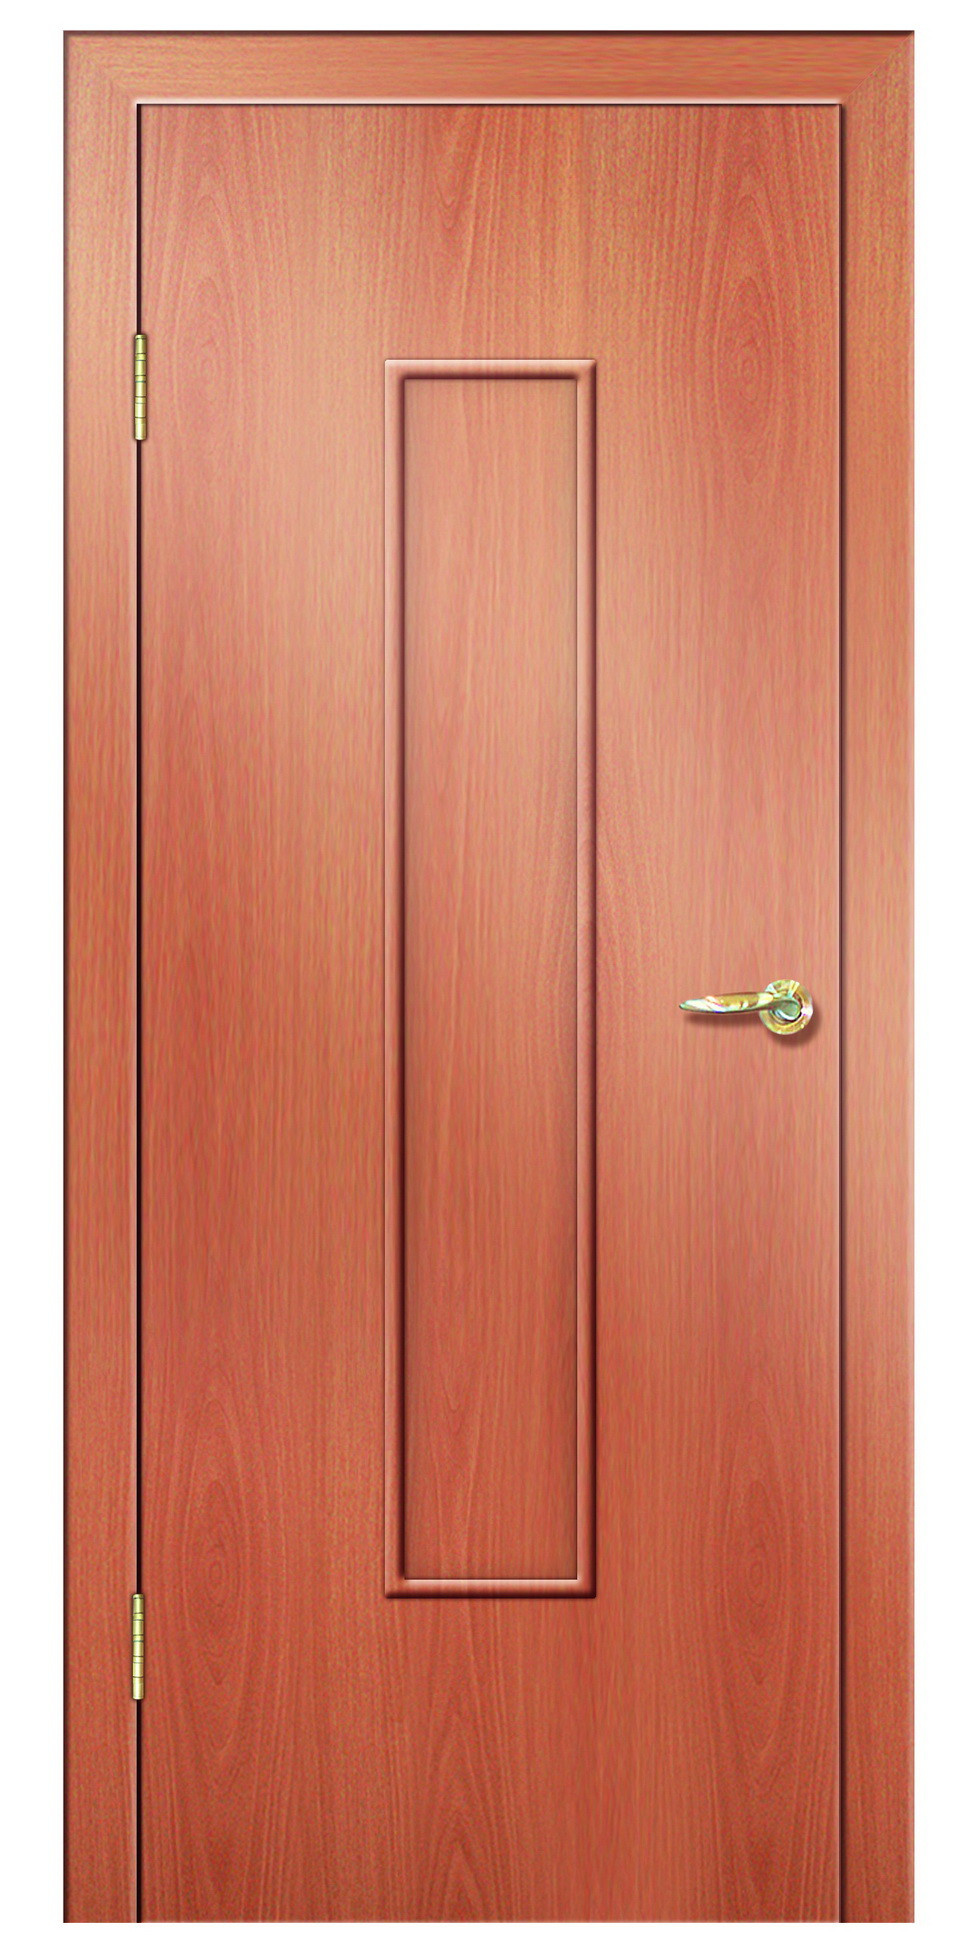 Дверная Линия Межкомнатная дверь ПГ-101, арт. 15727 - фото №2